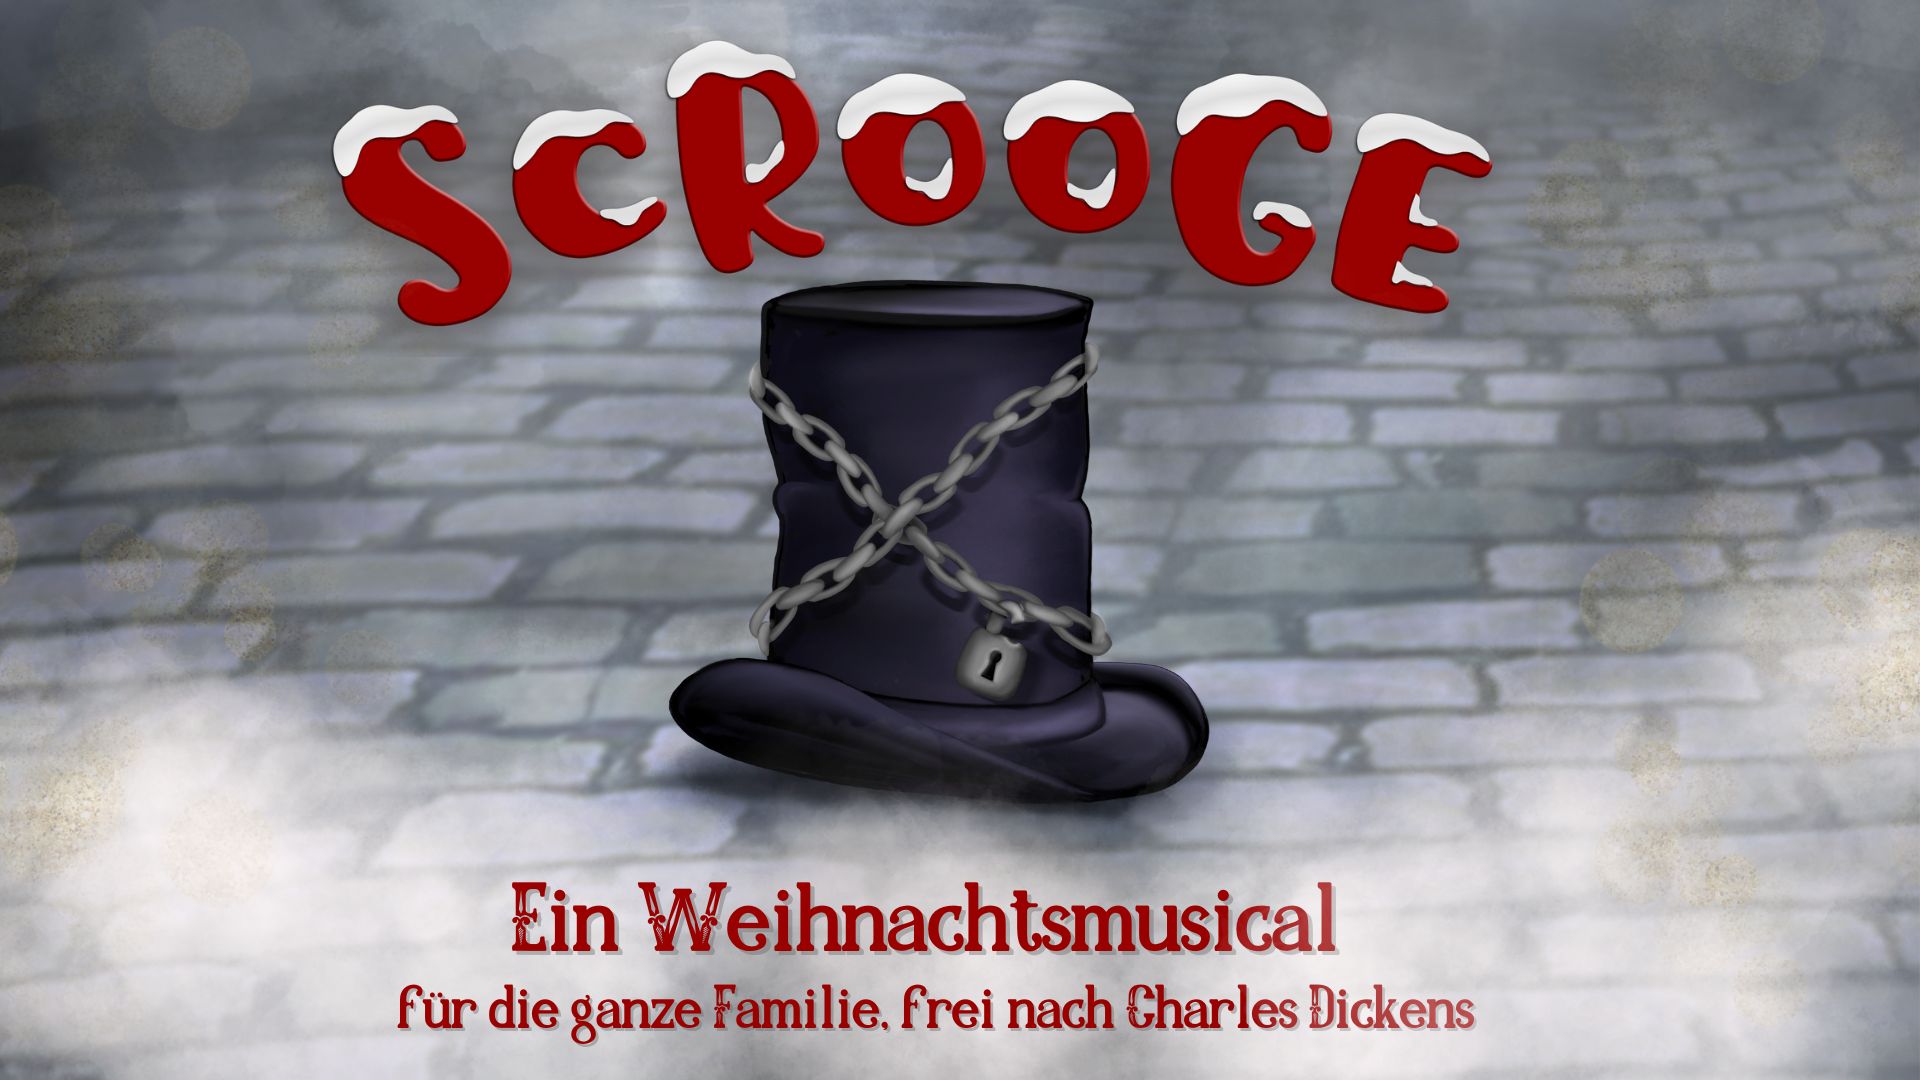 Scrooge - Eine Weihnachtsgeschichte